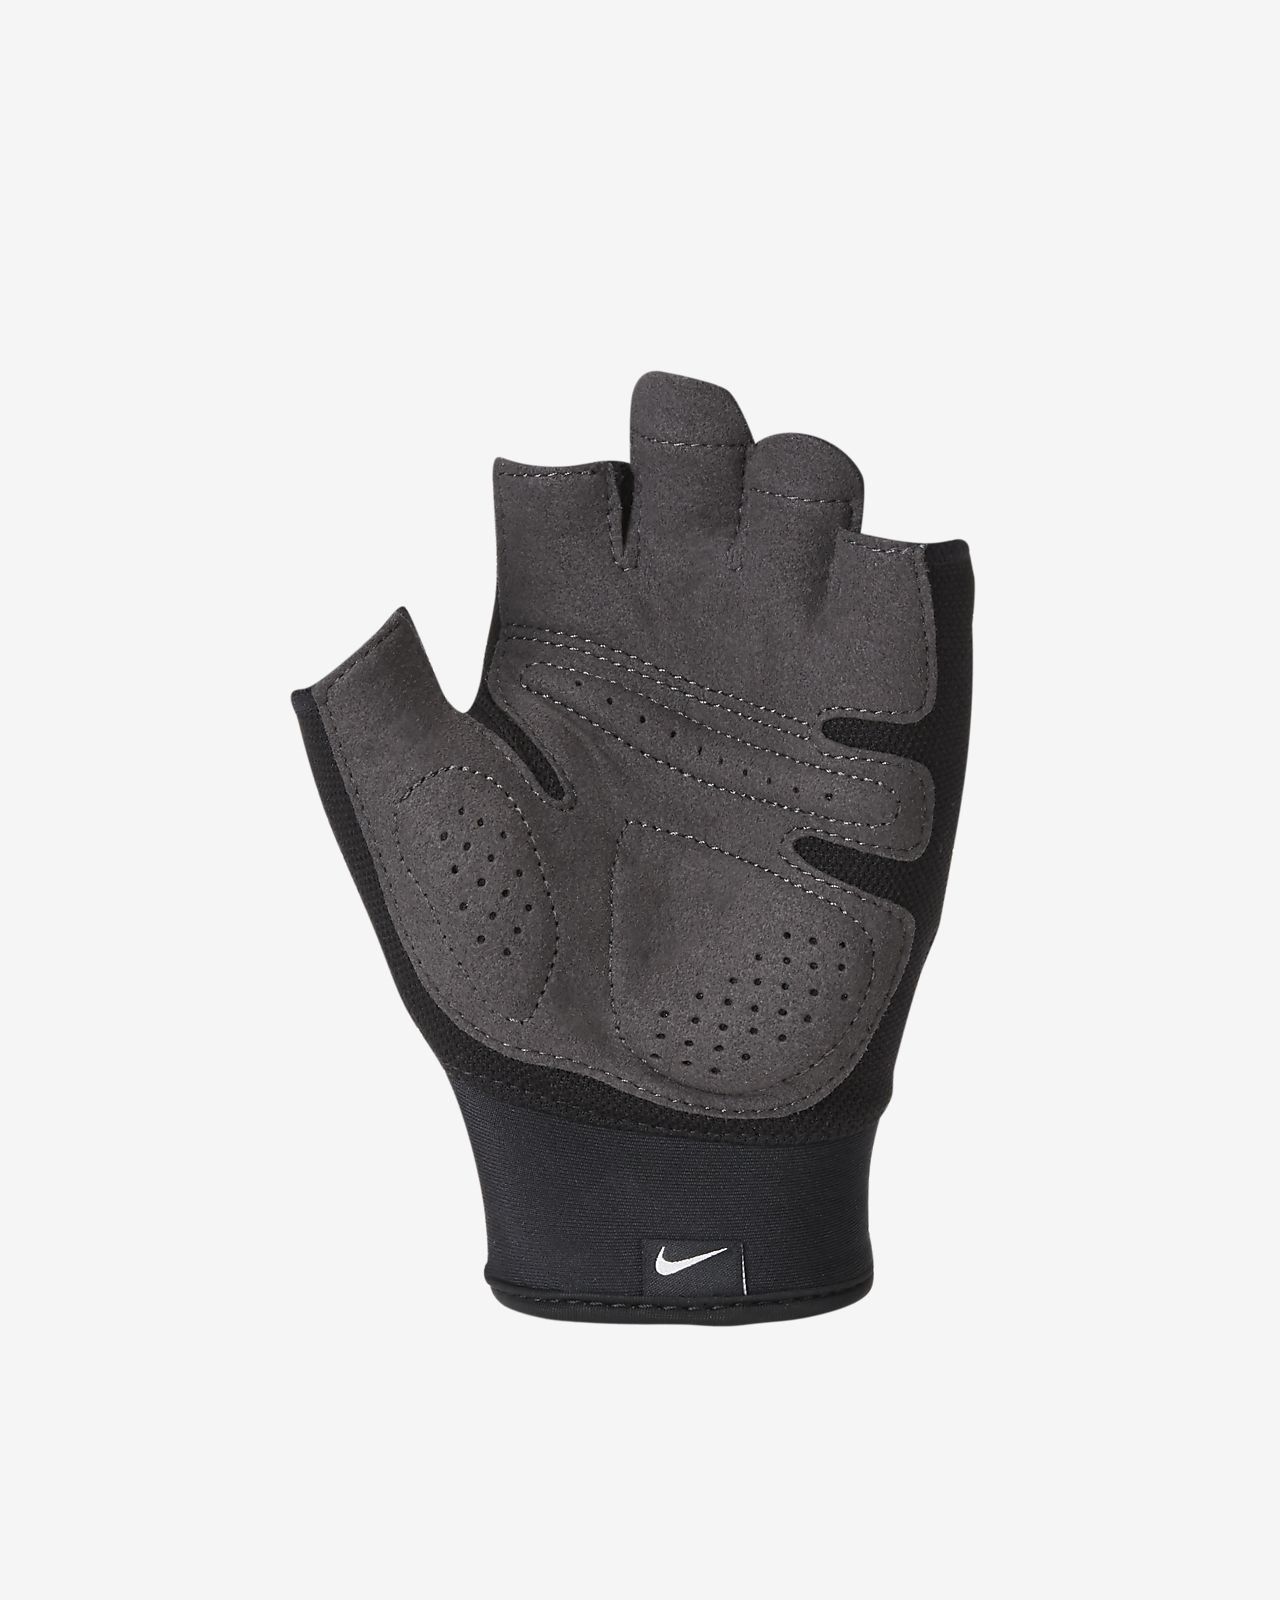 nike men's training gloves